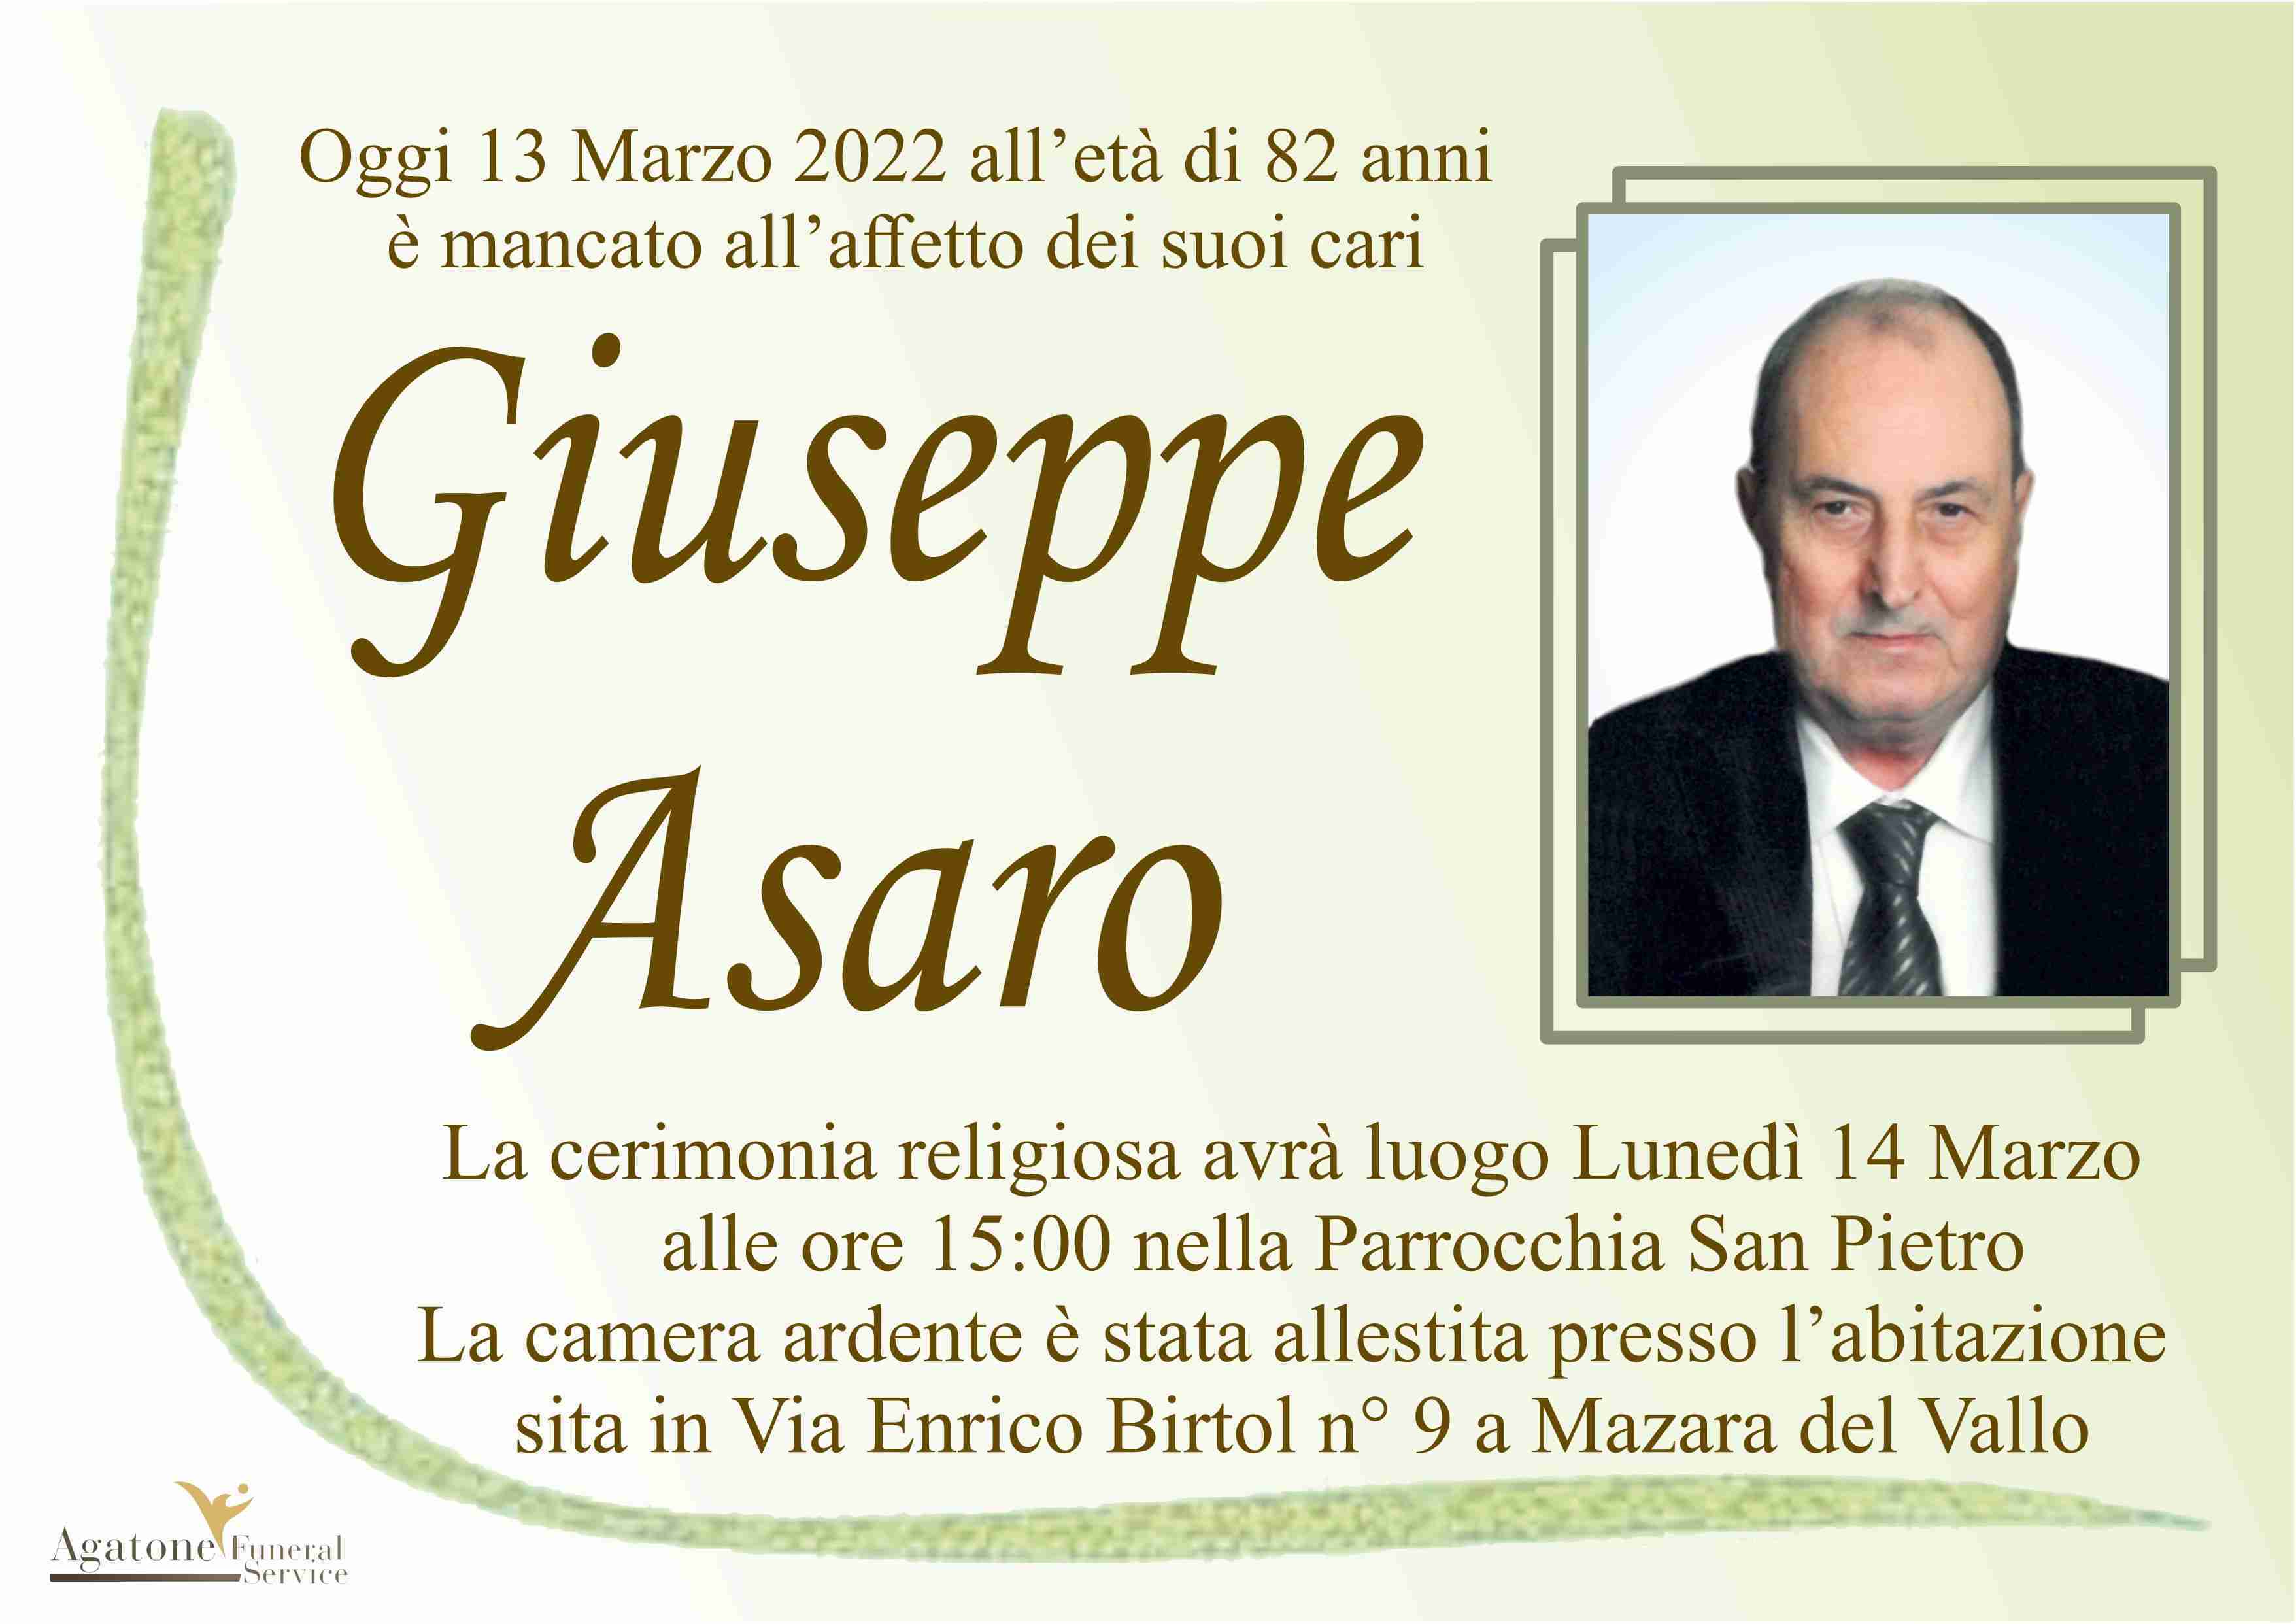 Giuseppe Asaro